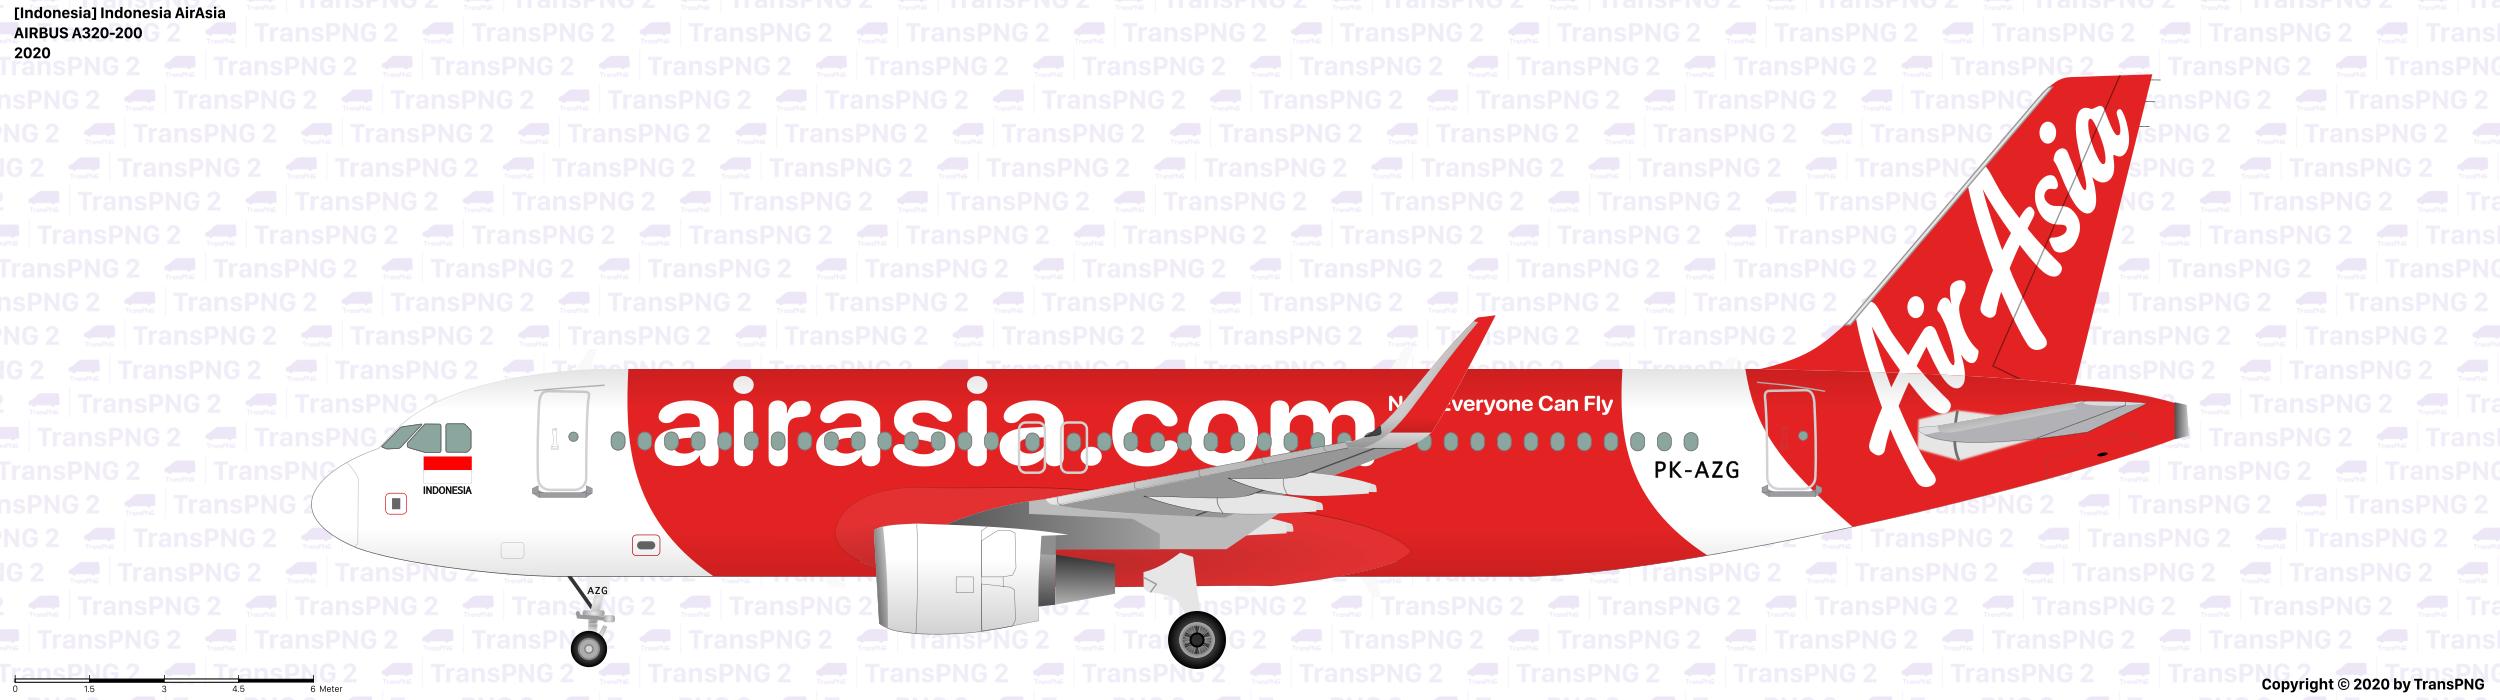 [25051] 印尼亞洲航空 50362698203_f2a9b32211_o